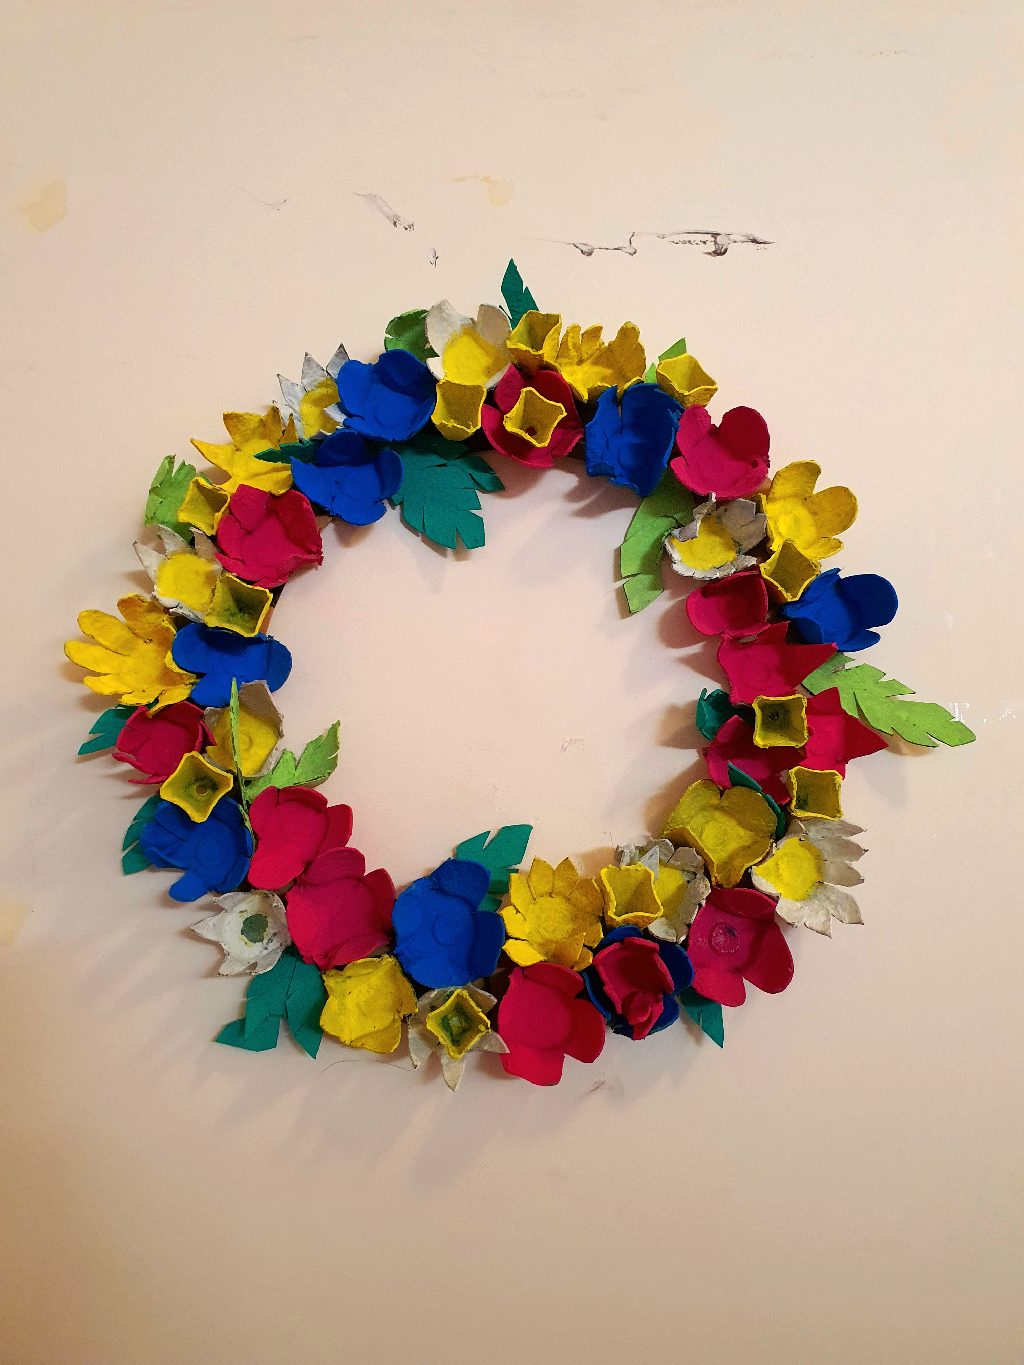 Atelier peinture : Réalisation d’une couronne de fleurs